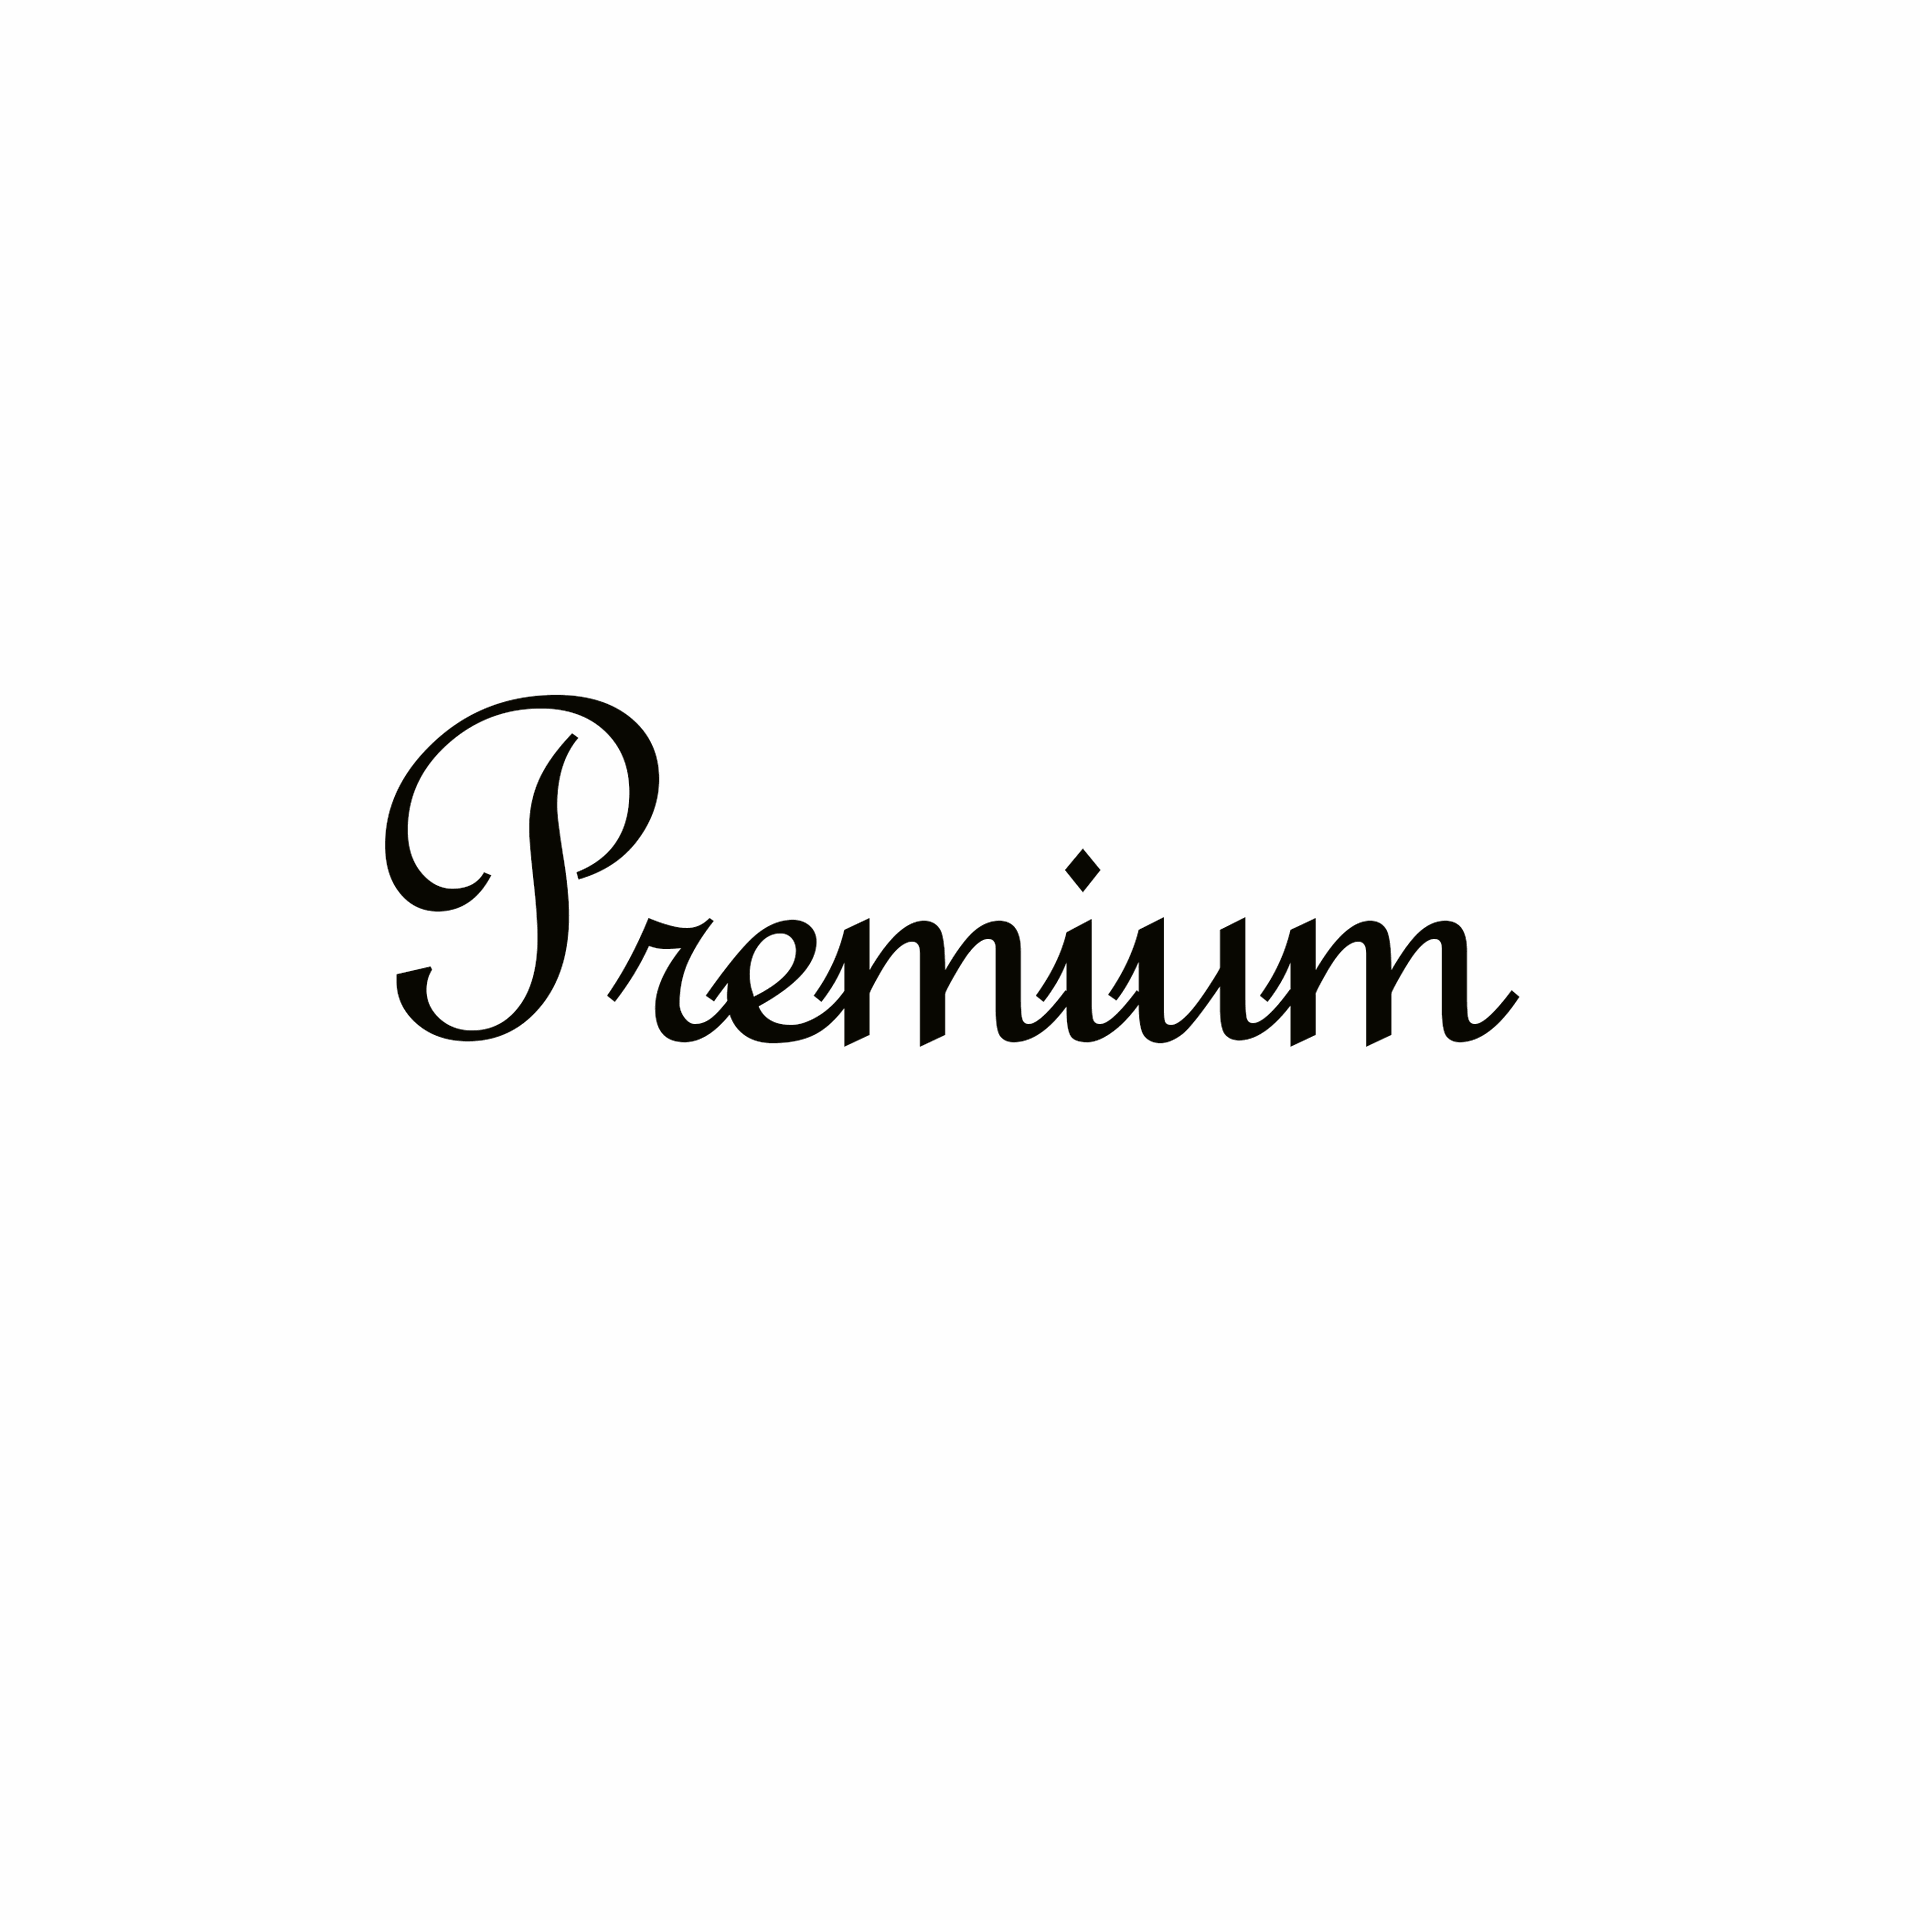 Product Brand: Premium